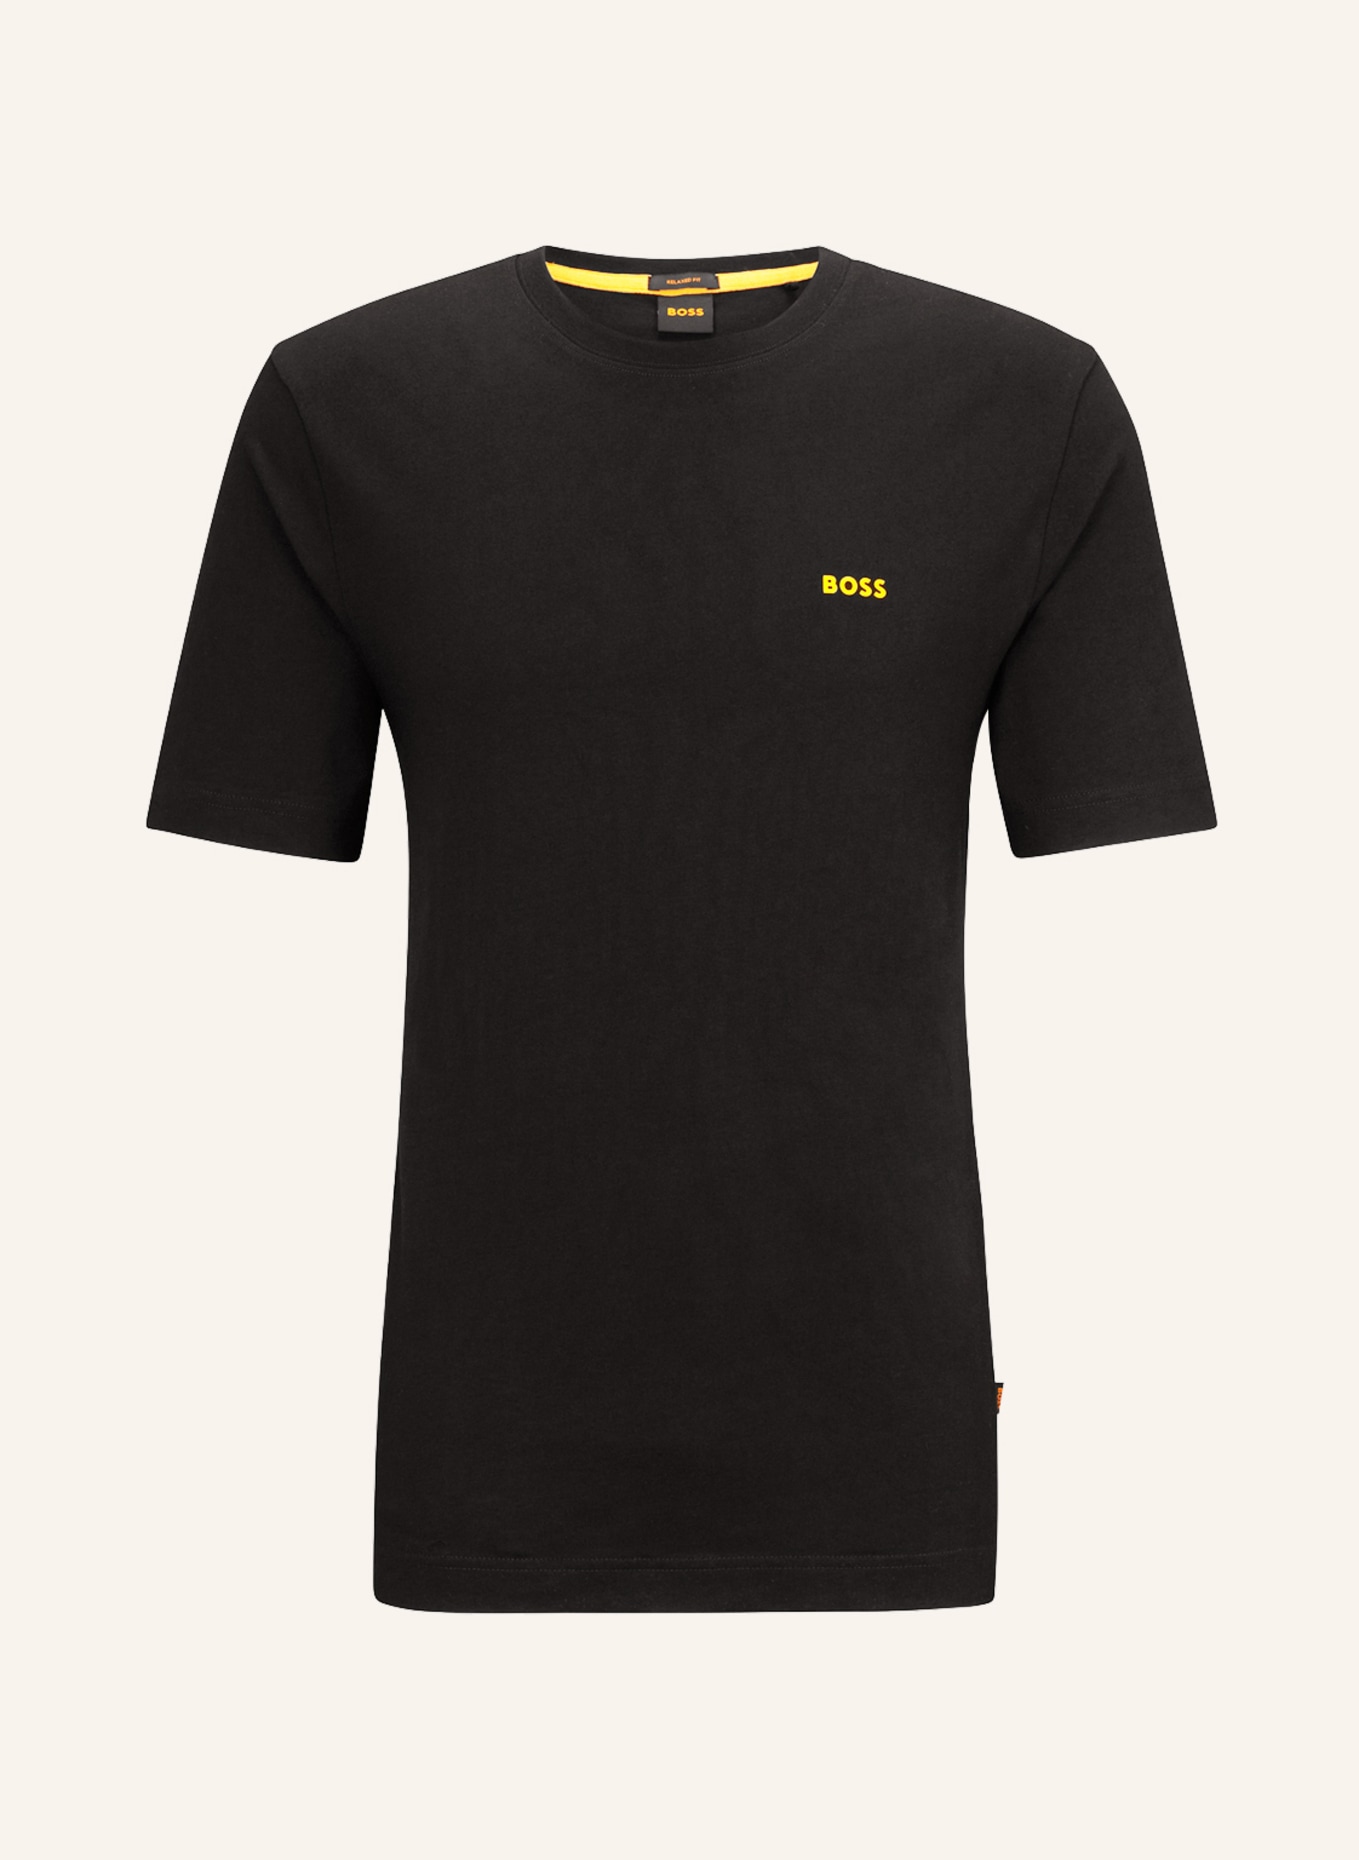 BOSS T-Shirt BOSS RACING, Farbe: SCHWARZ (Bild 1)